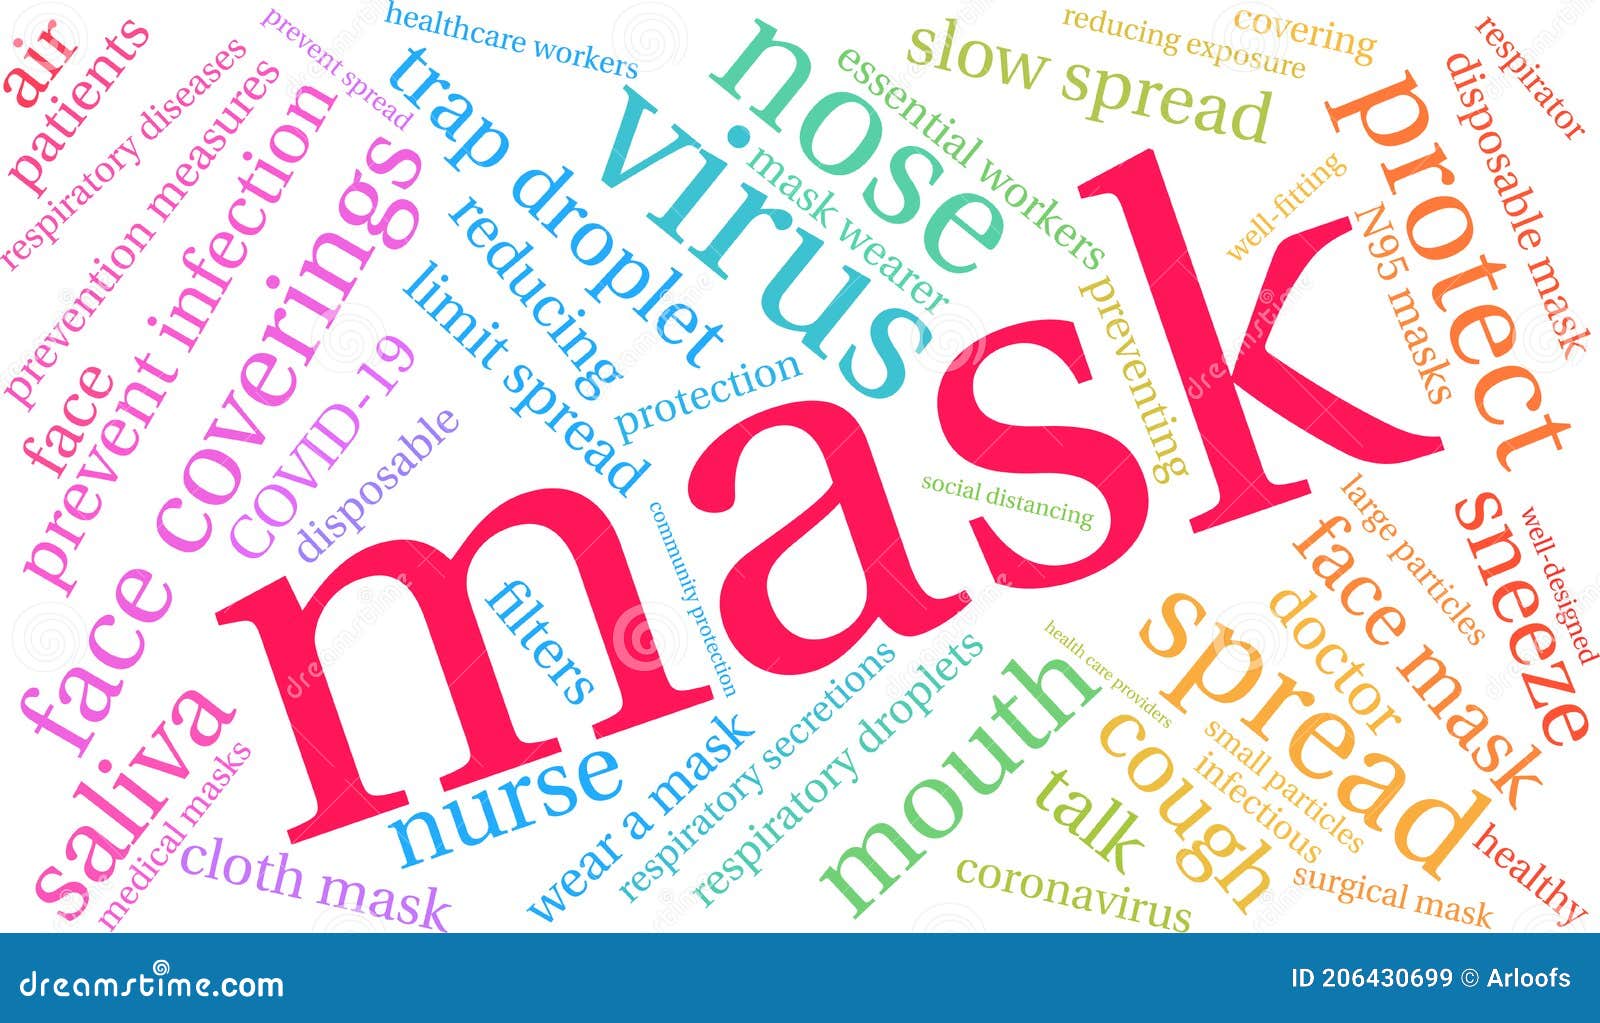 Есть слово маска. Маски для wordcloud. Masks for Word clouds.